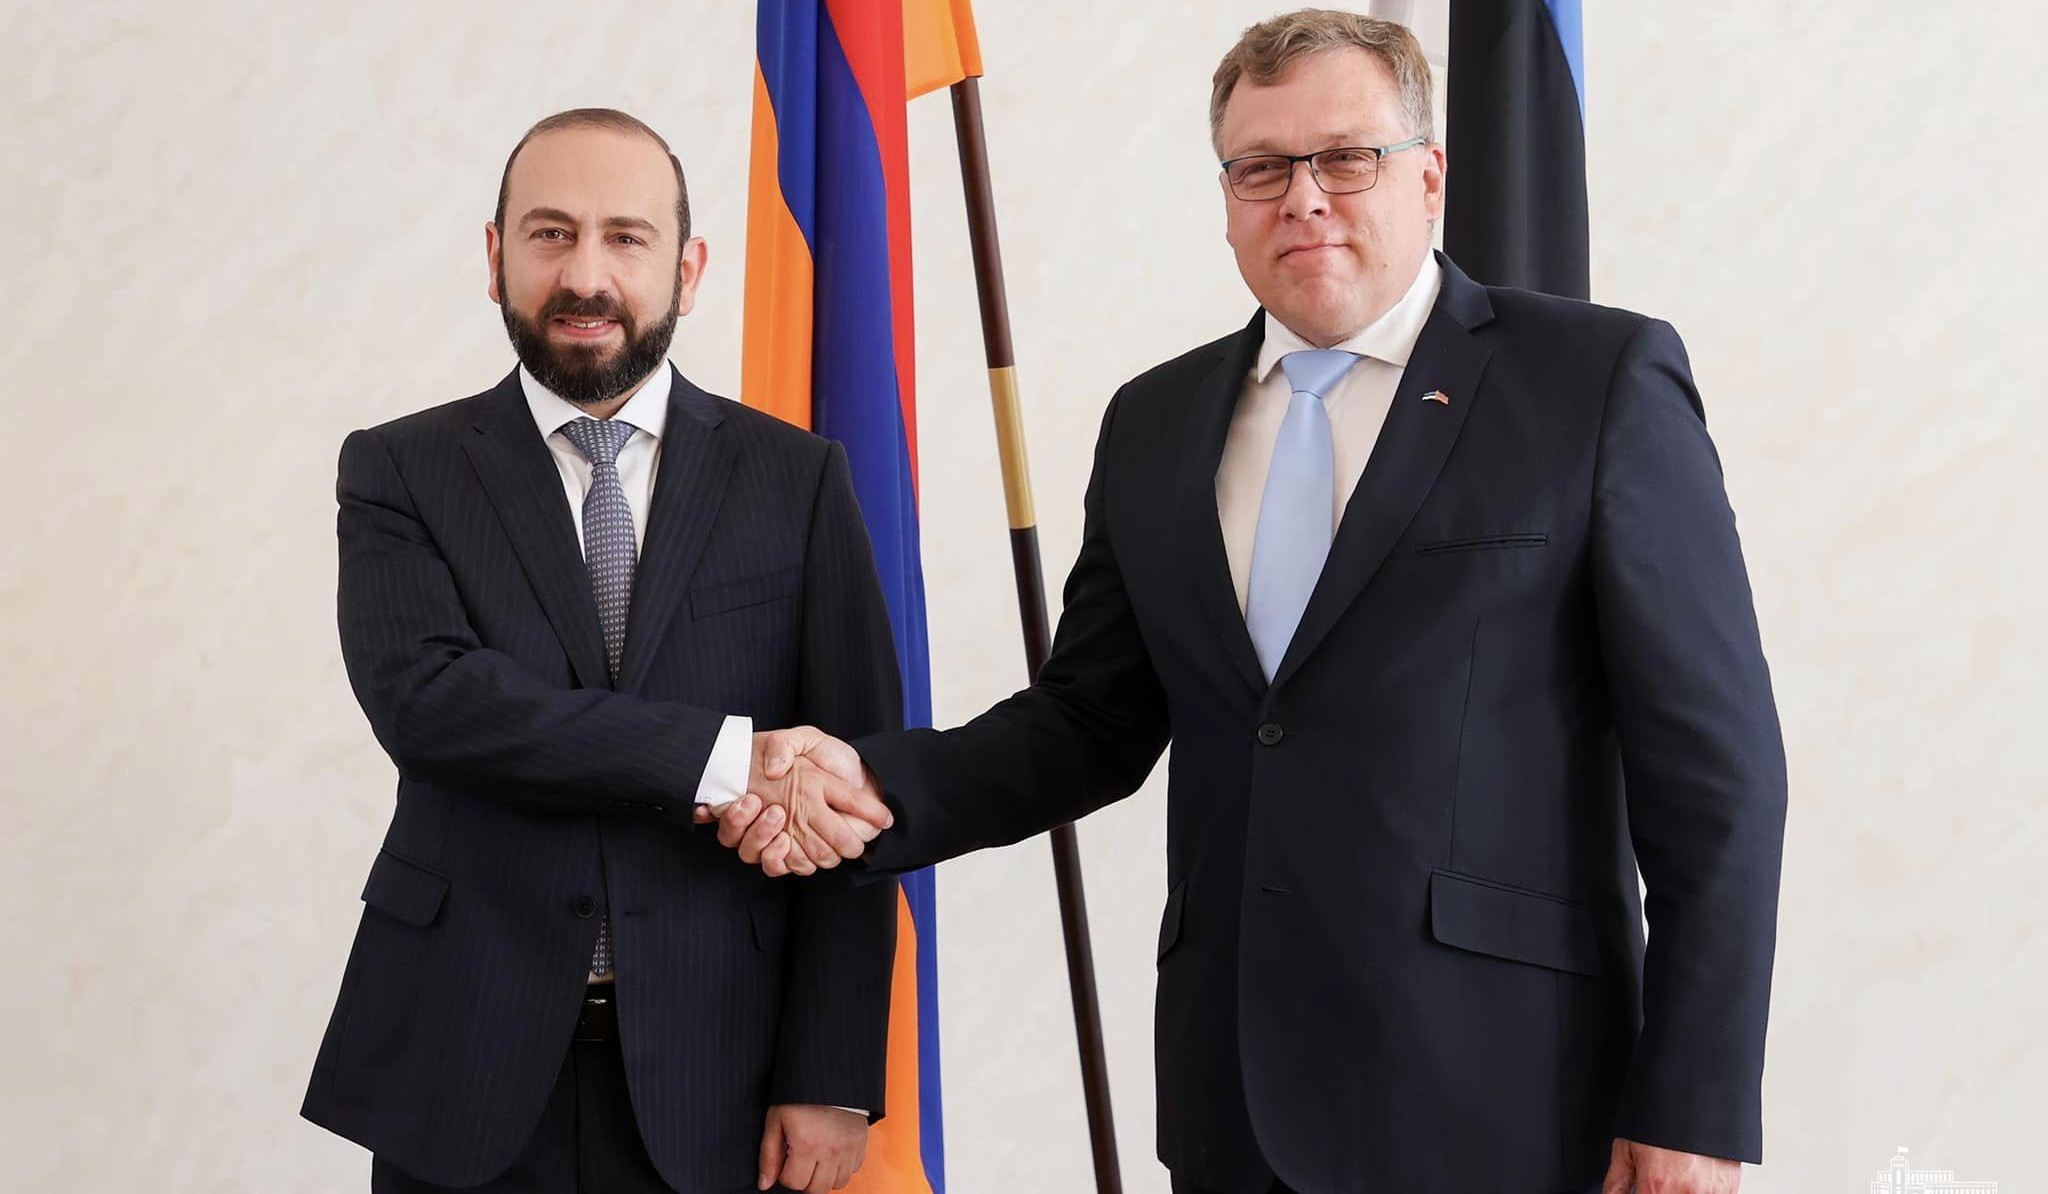 Միրզոյանը և Էստոնիայի խորհրդարանի նախագահը մտքեր են փոխանակել ՀՀ-ԵՄ գործընկերության շուրջ